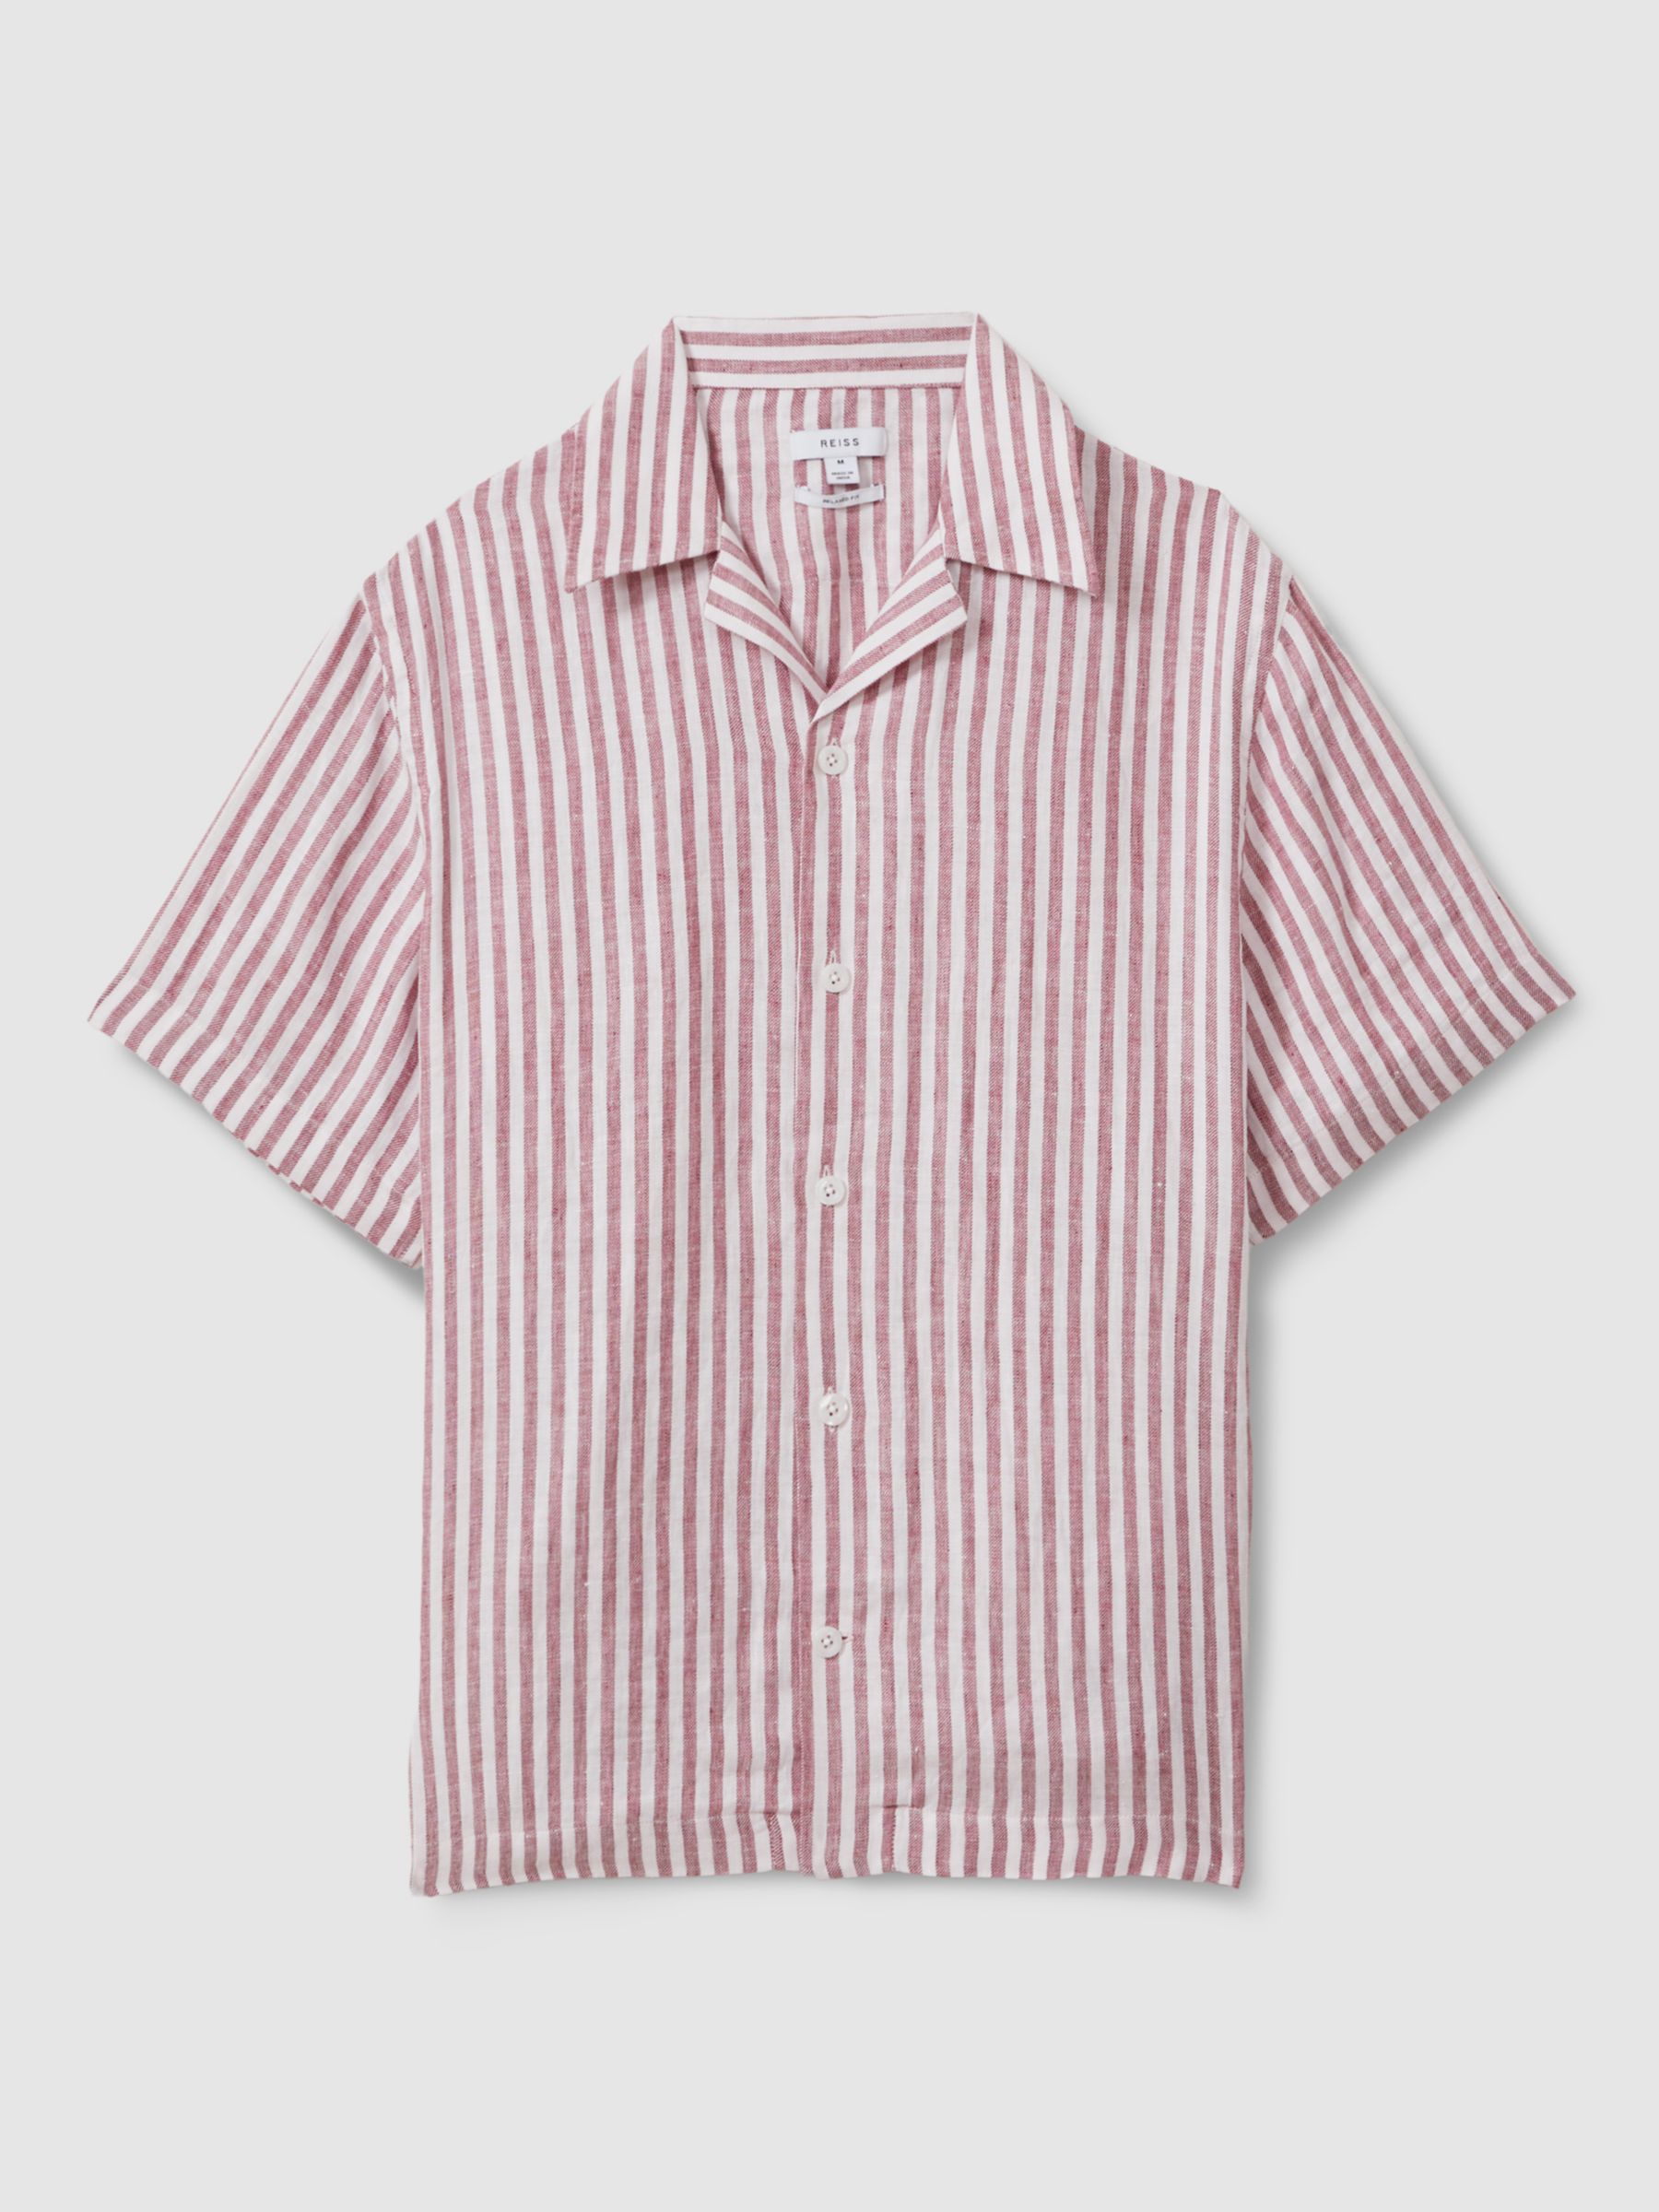 Reiss Beldi Linen Short Sleeve Cuban Shirt, Pink/White Stripe, XS